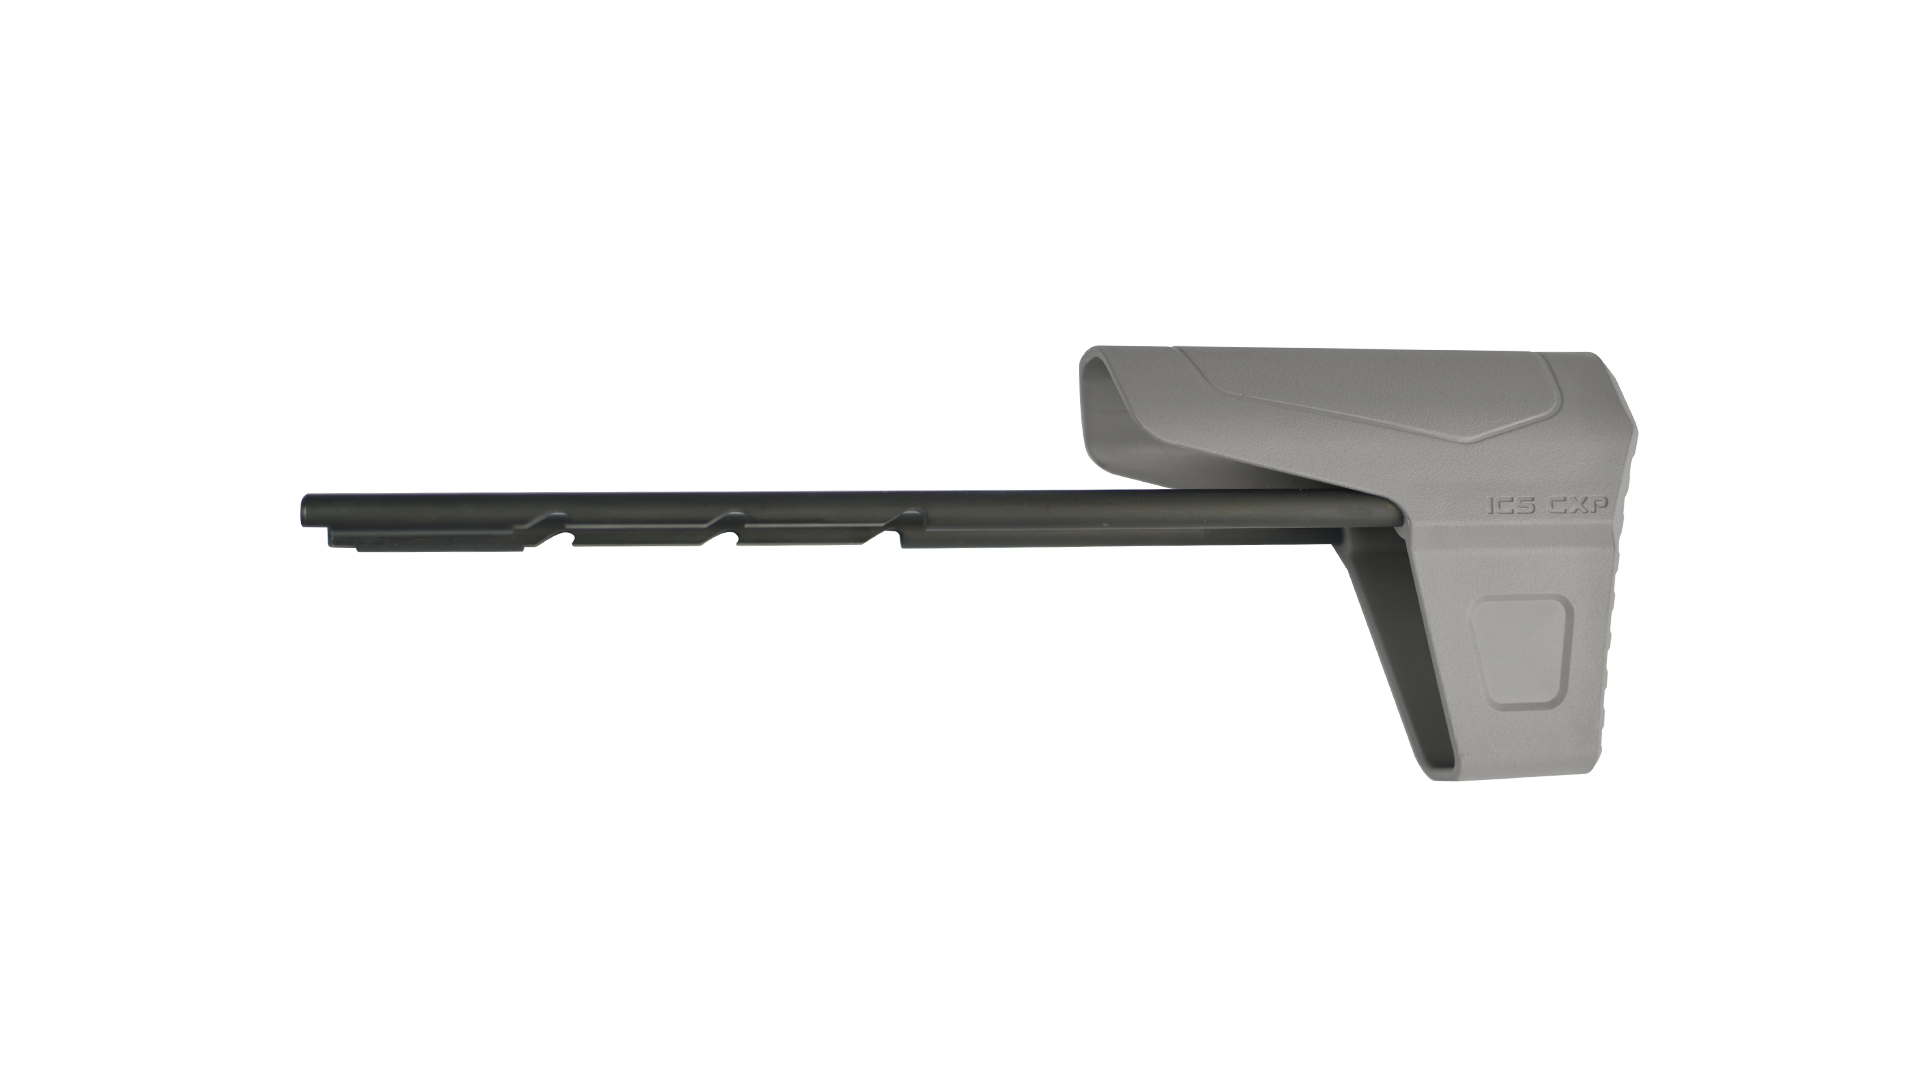 【MA-469G】PDW9 槍托底板組-水泥灰色